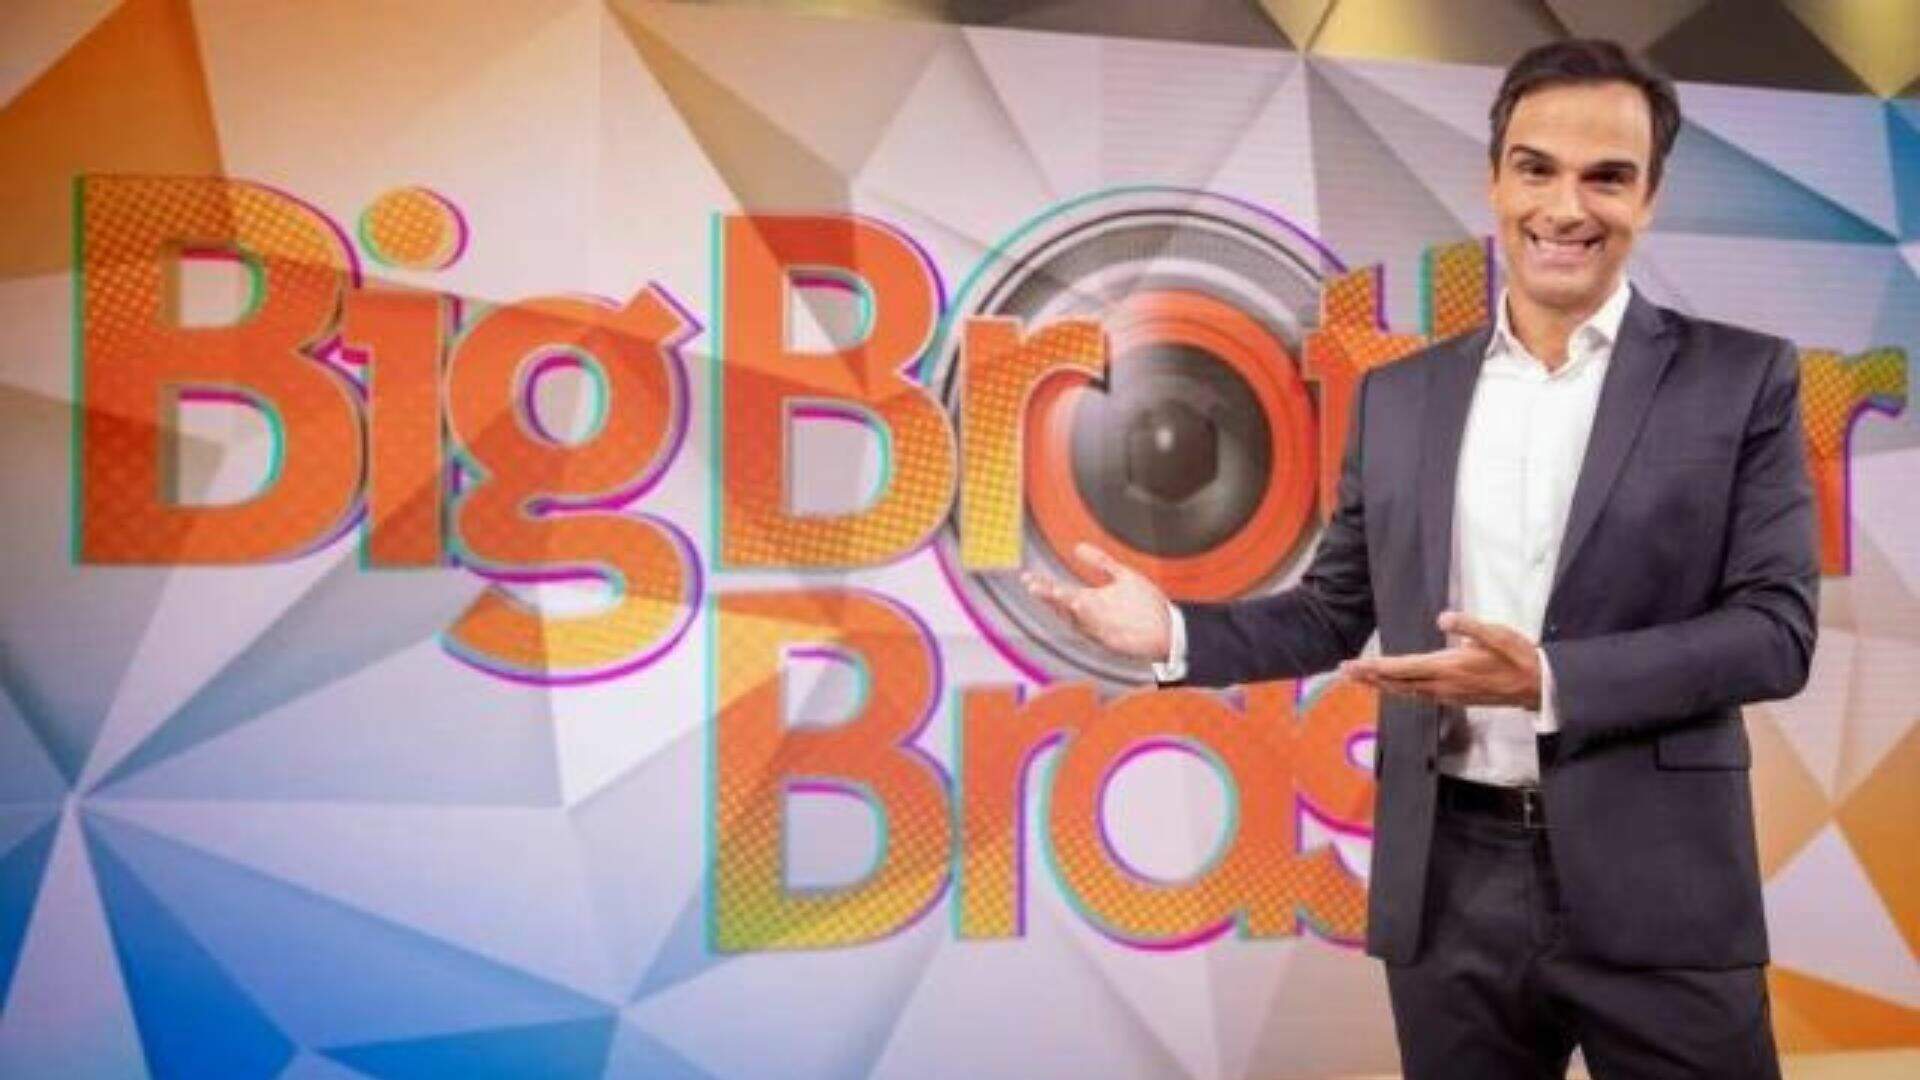 Após 12 anos, Globo muda valor do prêmio de R$1,5 milhão do BBB e dá recompensas aos participantes - Metropolitana FM